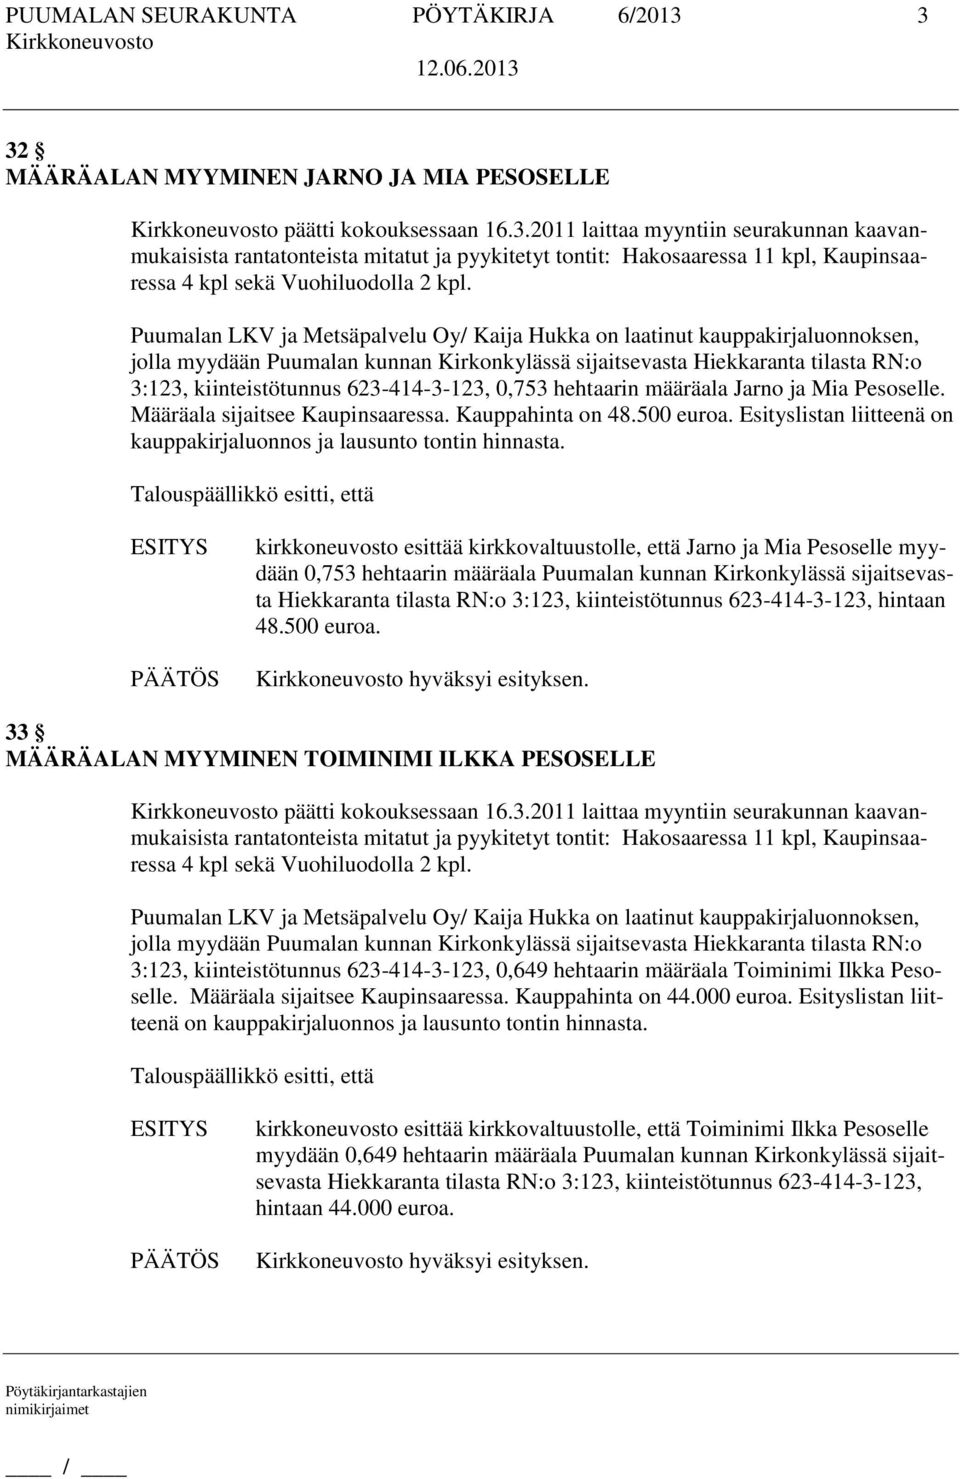 Puumalan LKV ja Metsäpalvelu Oy/ Kaija Hukka on laatinut kauppakirjaluonnoksen, jolla myydään Puumalan kunnan Kirkonkylässä sijaitsevasta Hiekkaranta tilasta RN:o 3:123, kiinteistötunnus